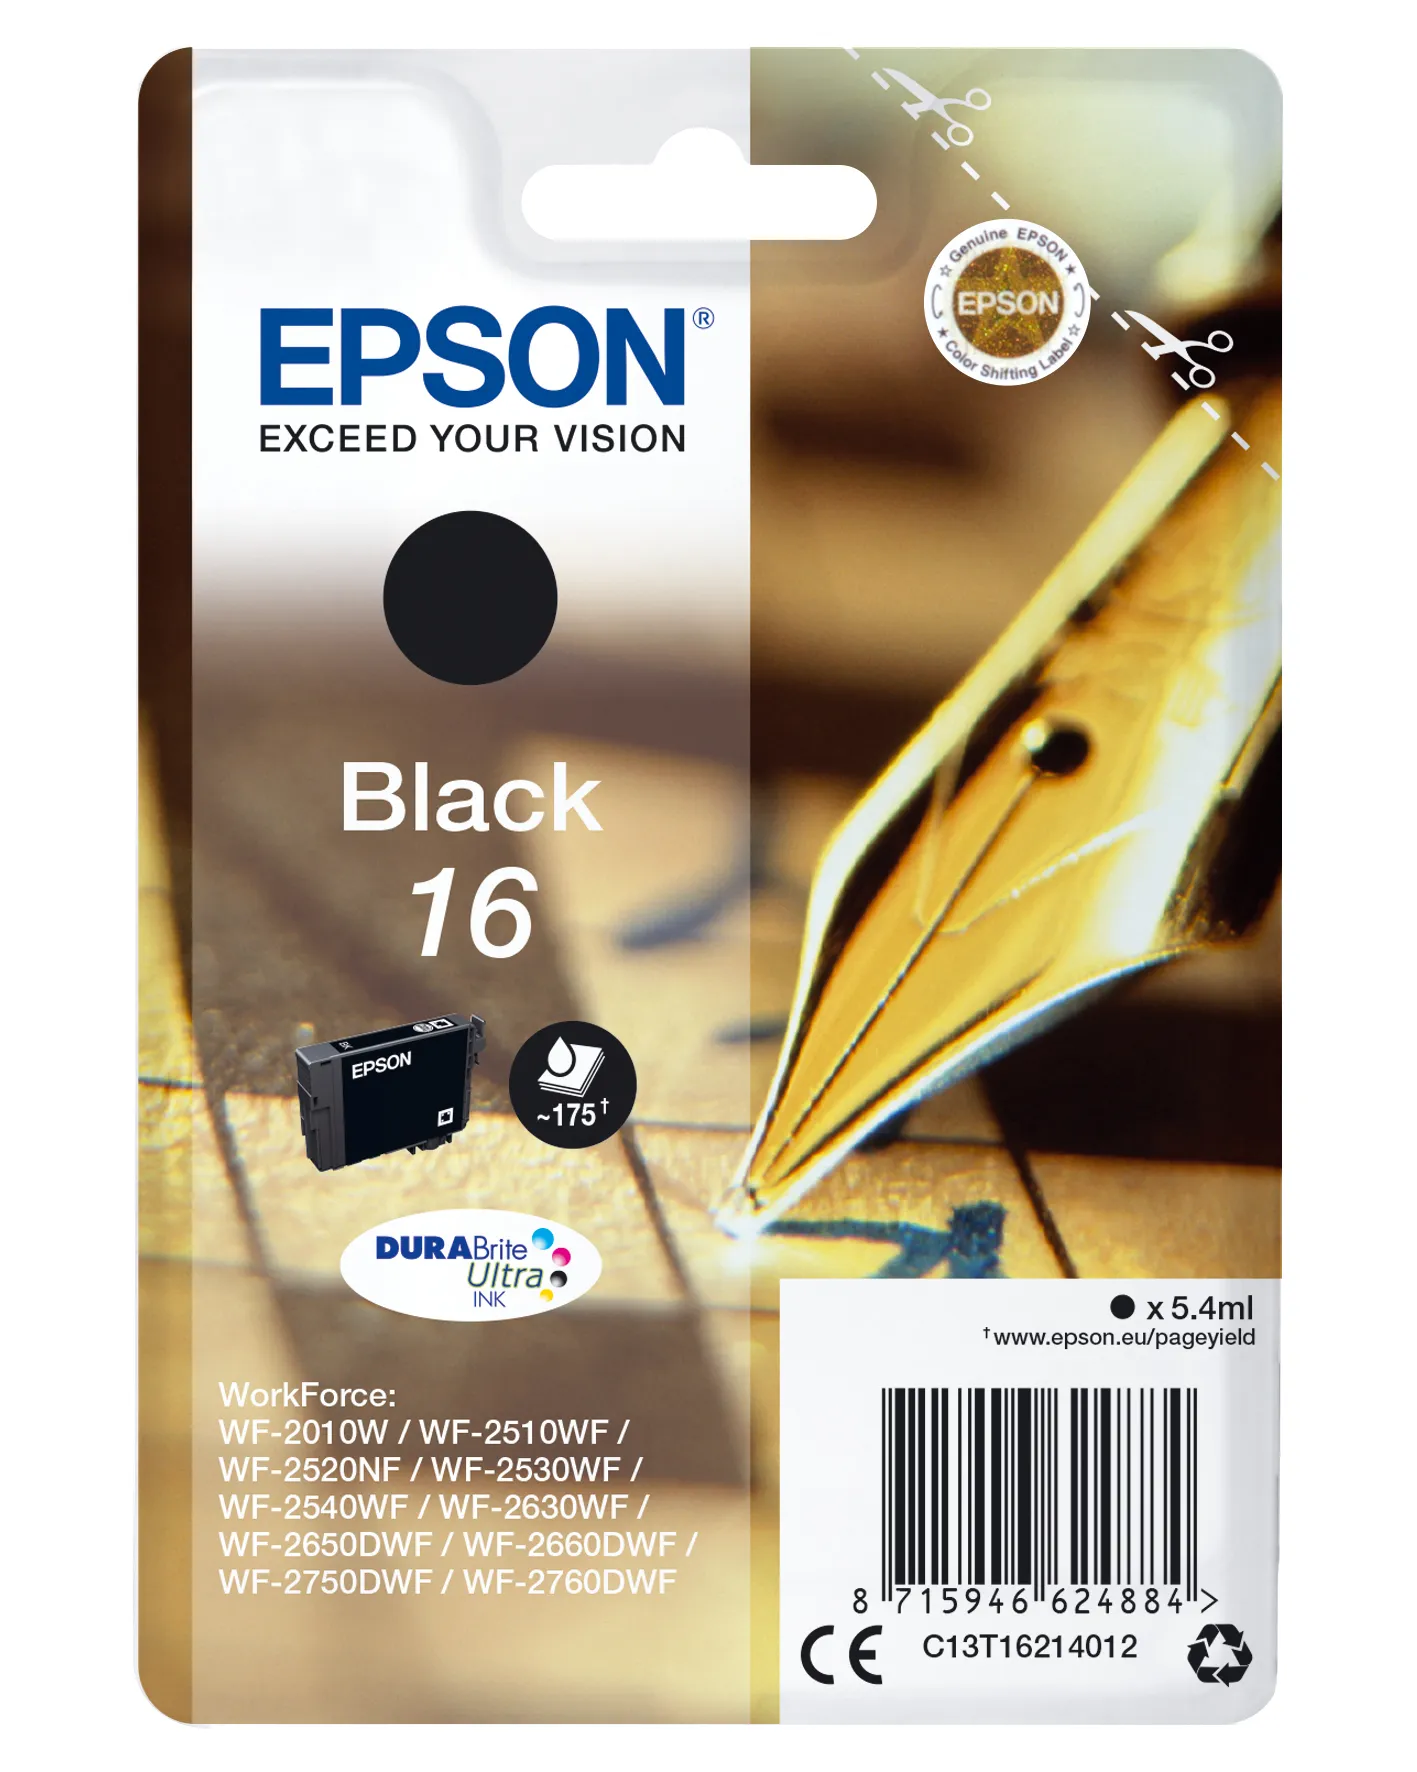 Achat EPSON 16 cartouche encre noir capacité standard 5.4ml sur hello RSE - visuel 3